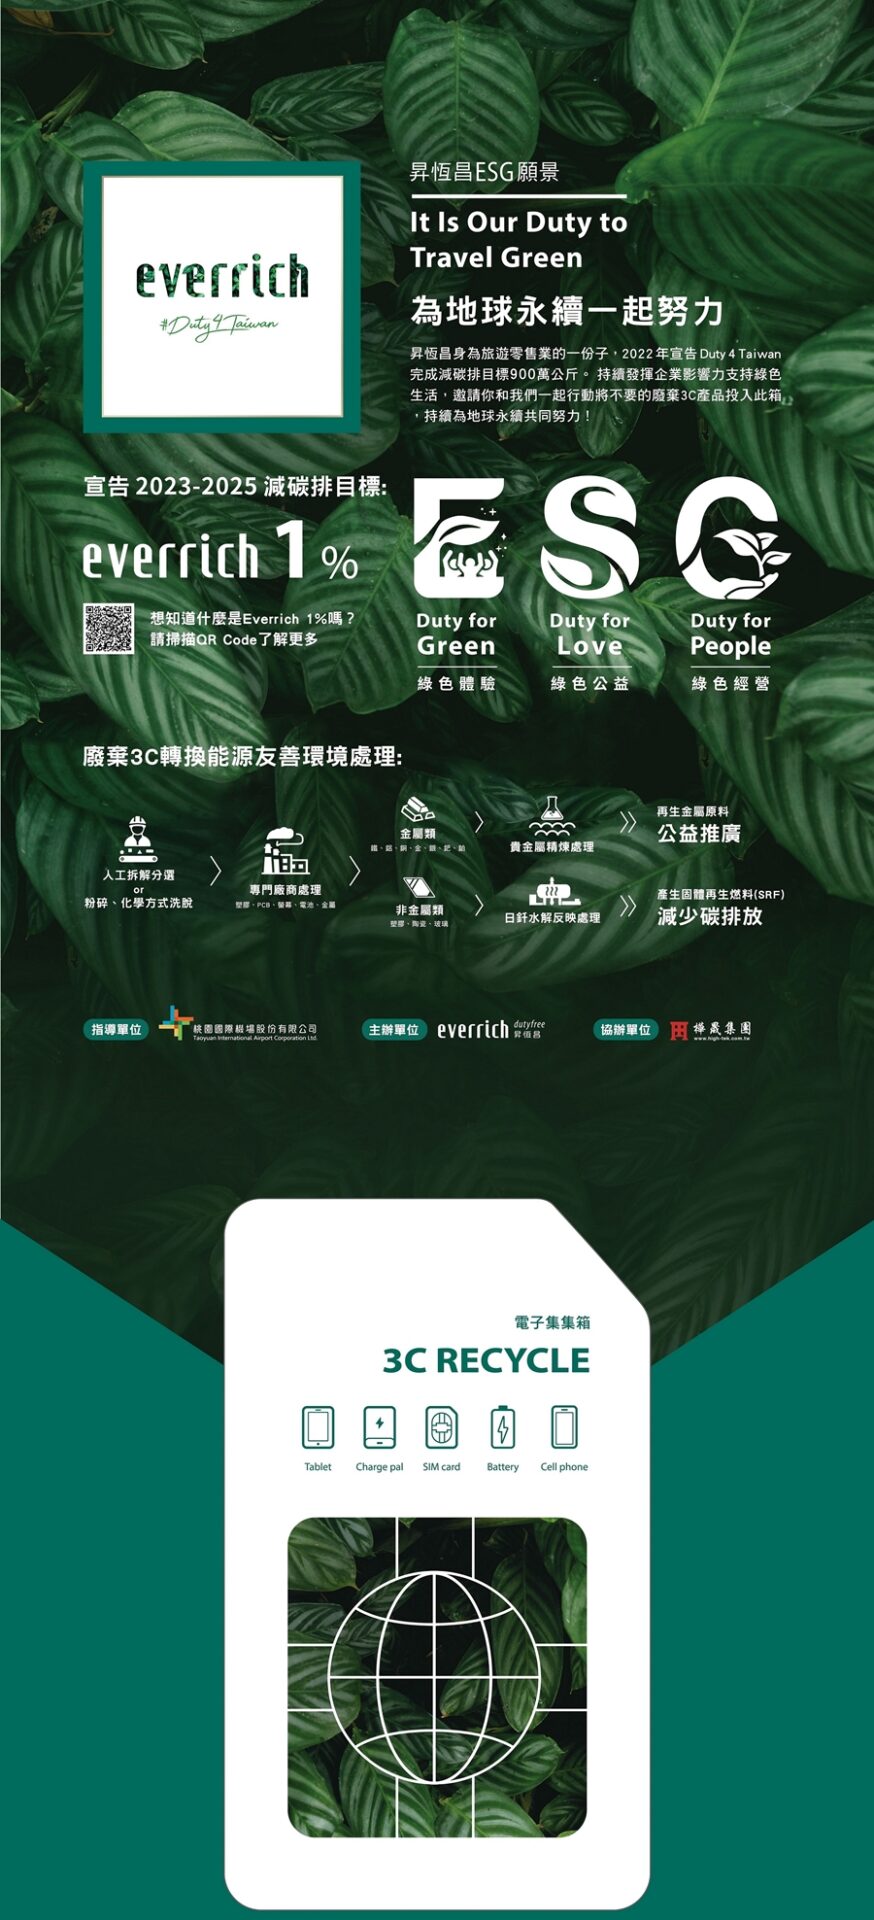 9003c回收箱以sim卡造型為設計發想，結合綠色植物意象，希望帶給旅客環保、綠活的感受